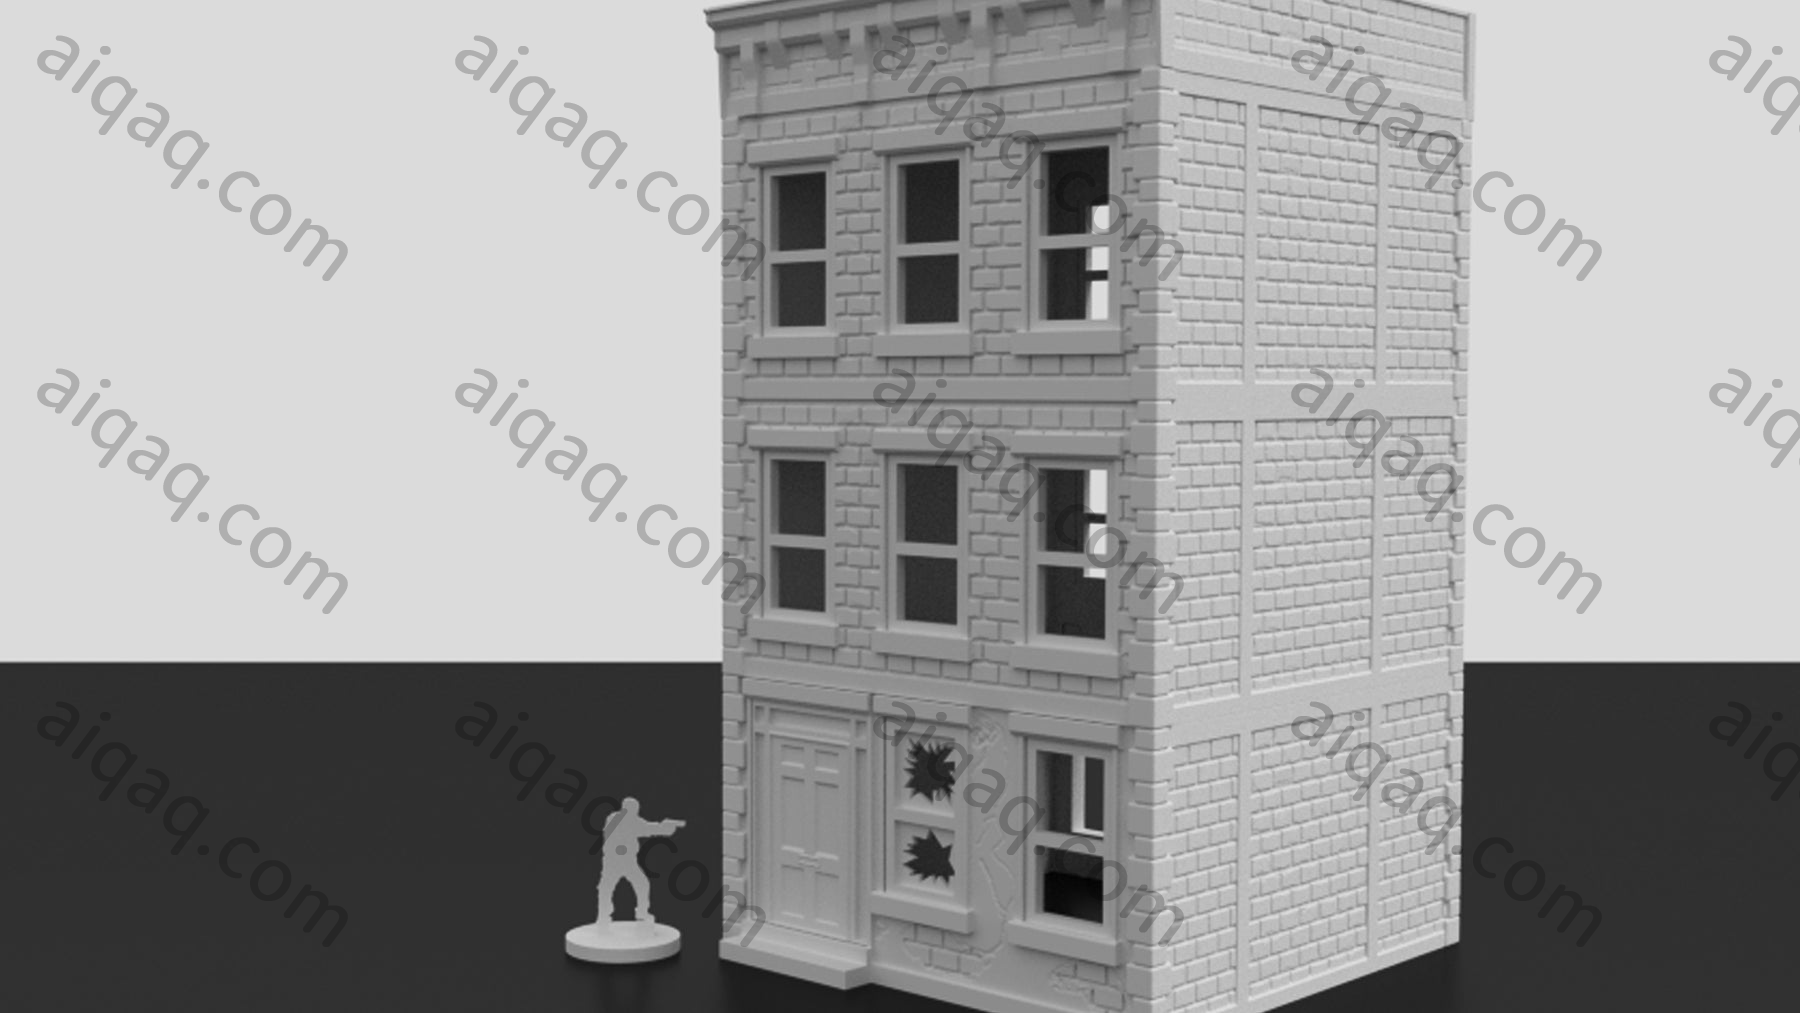 城市公寓楼“A”-STL下载网_3D打印模型网_3D打印机_3D模型库